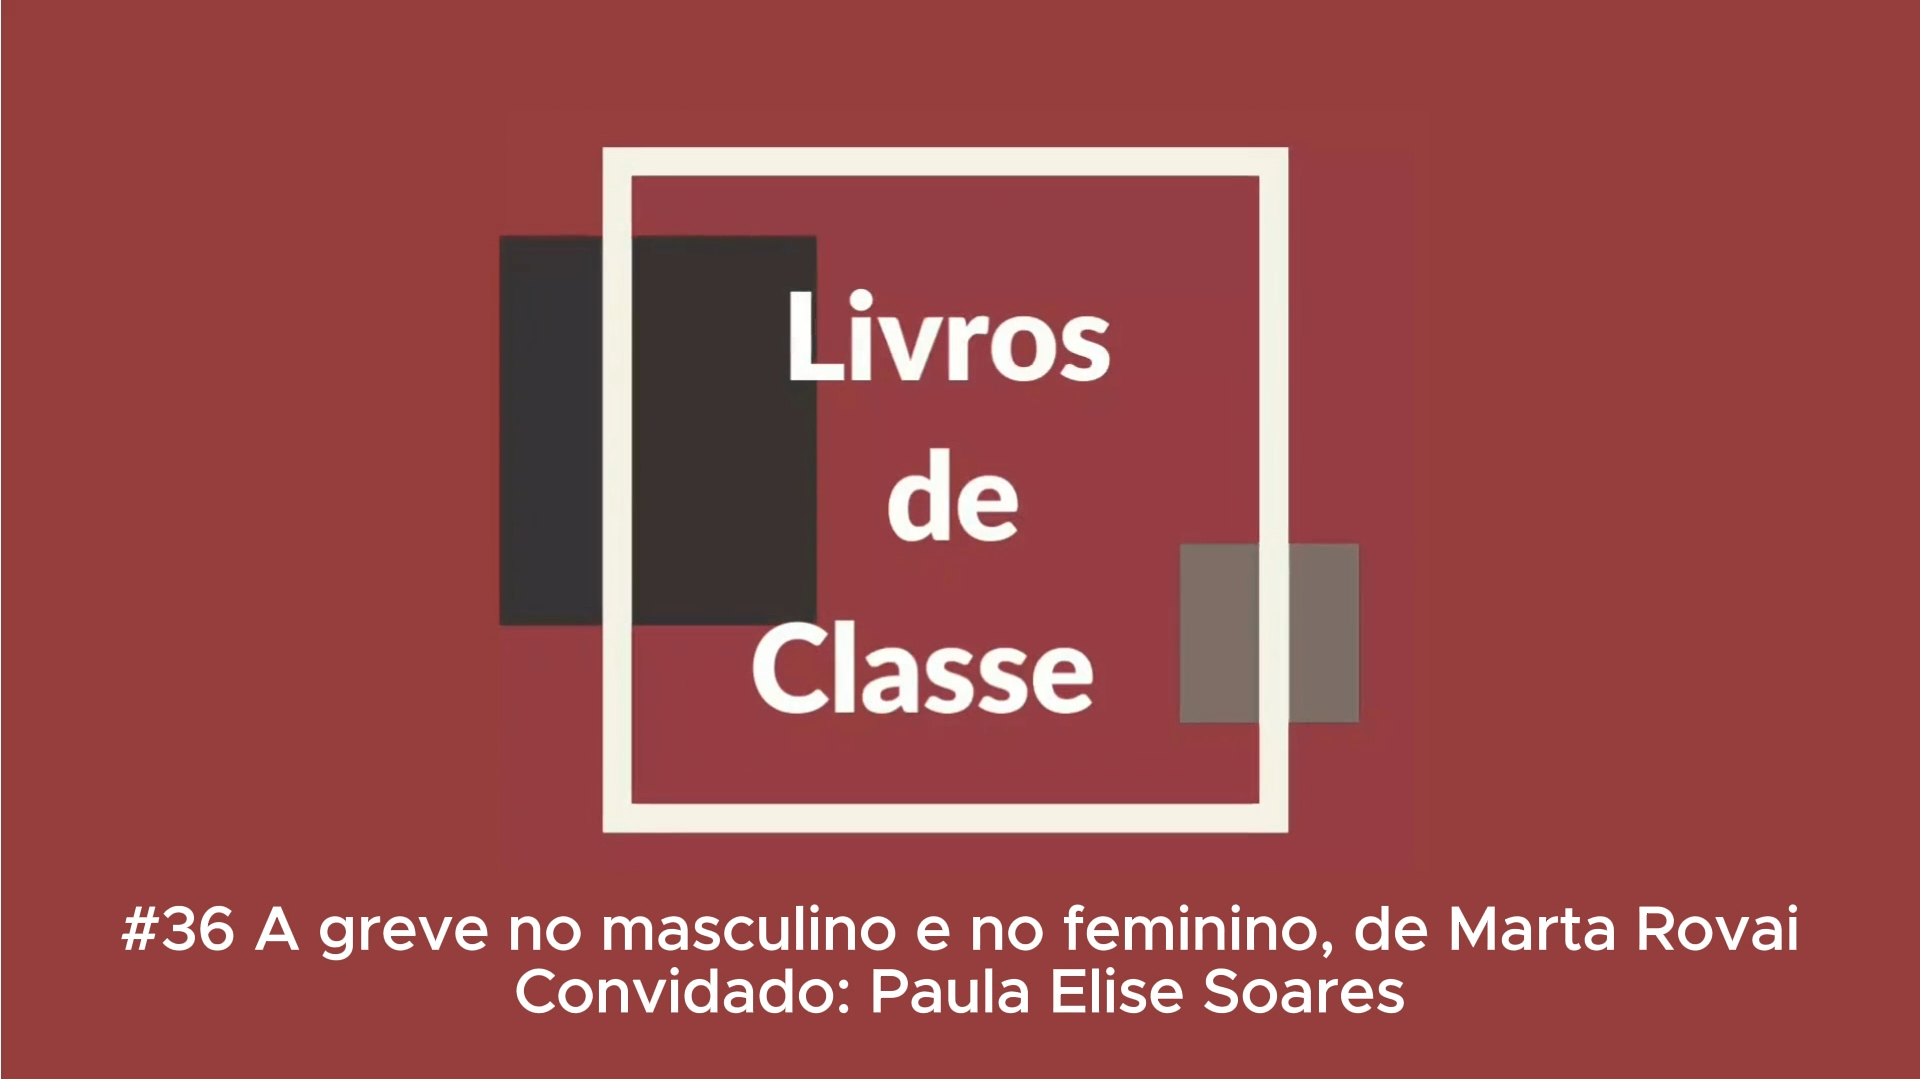 Livros de Classe #36: A greve no masculino e no feminino, de Marta Rovai, por Paula Elise Soares